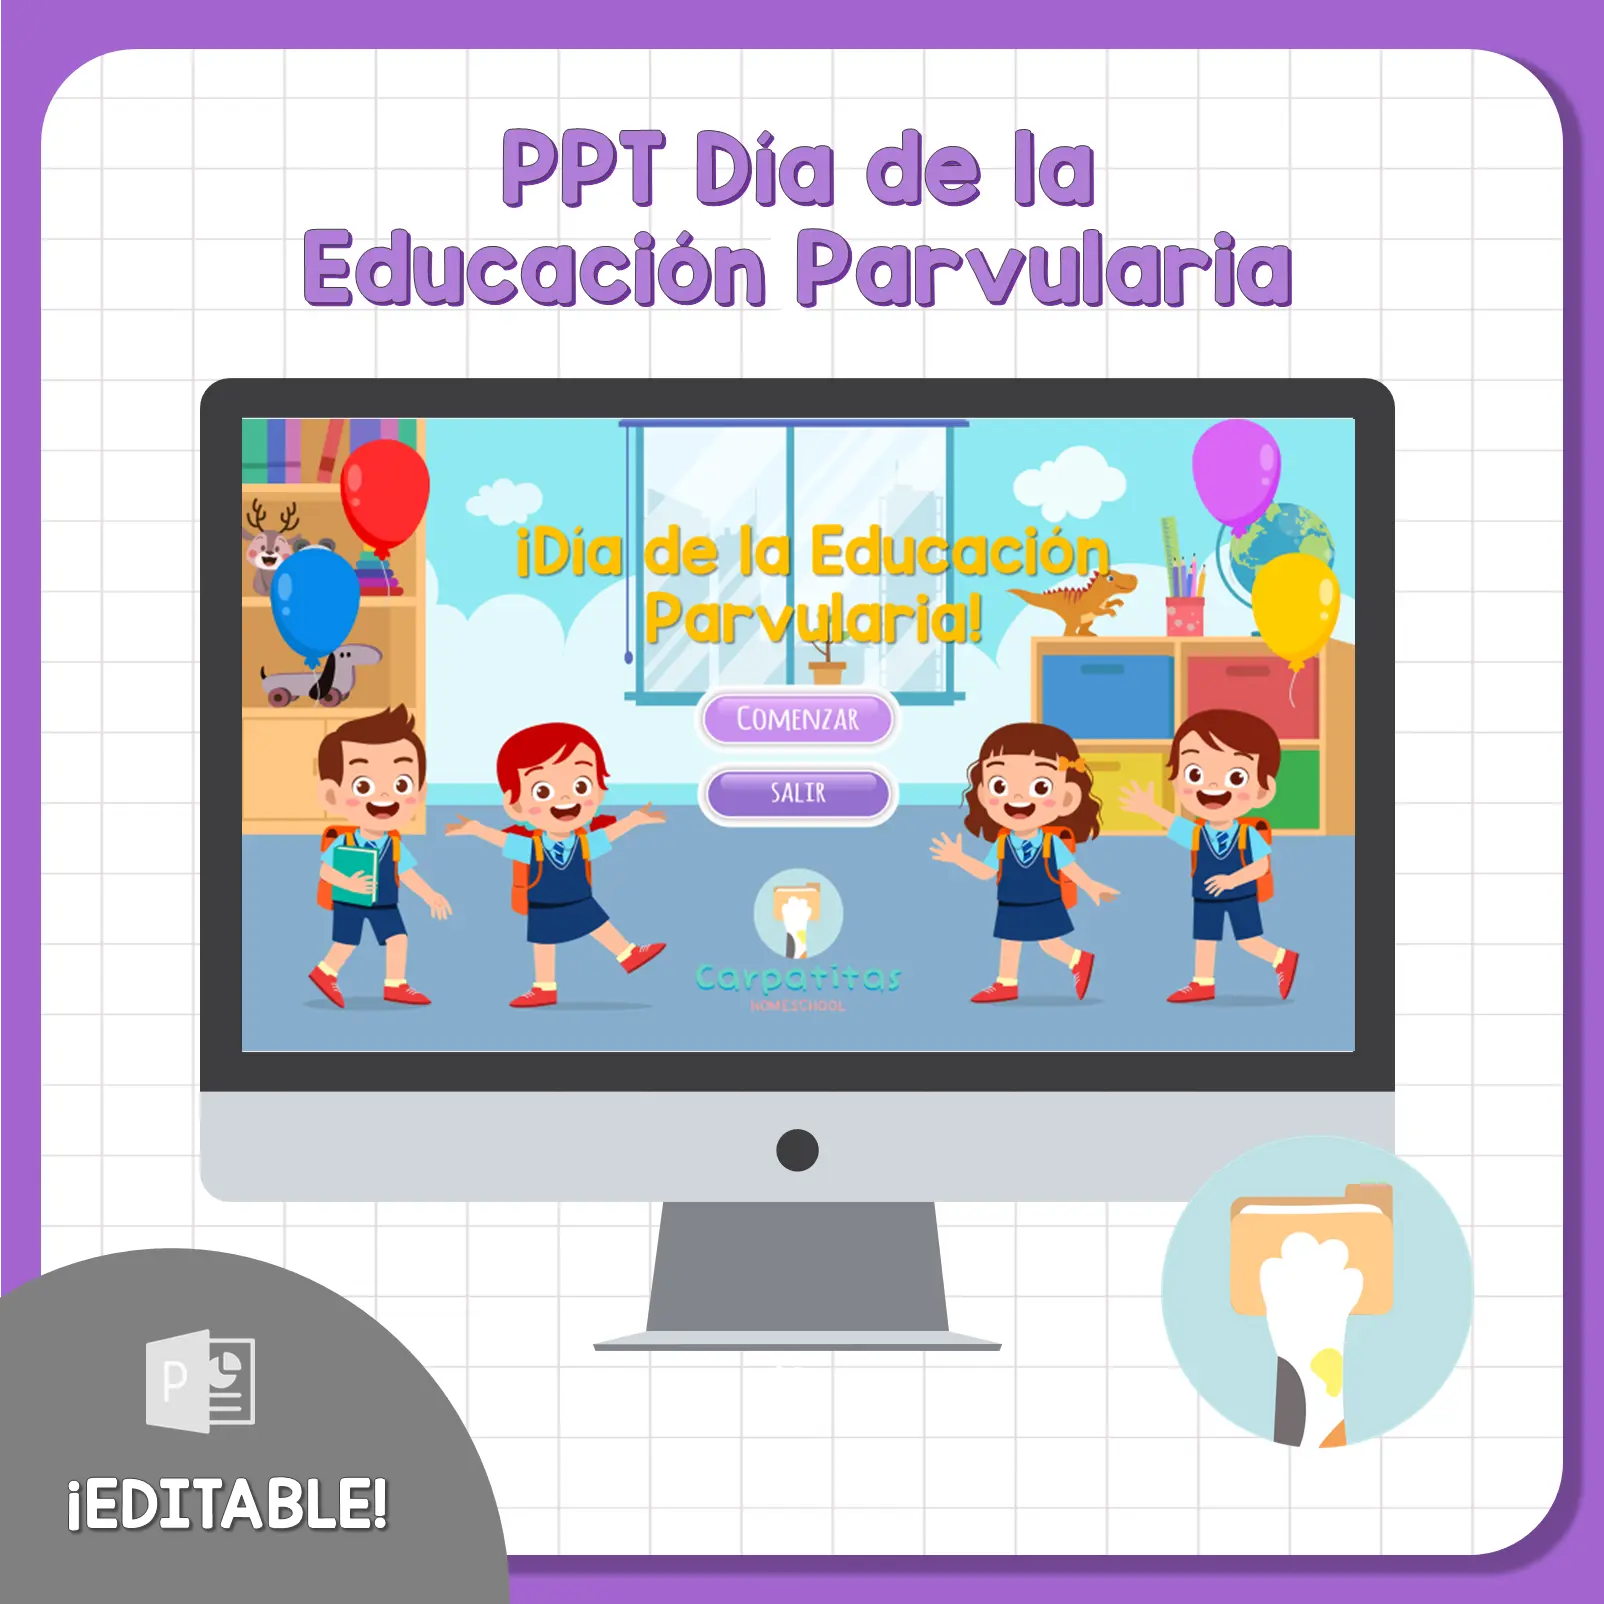 PPT Día de la Educación Parvularia